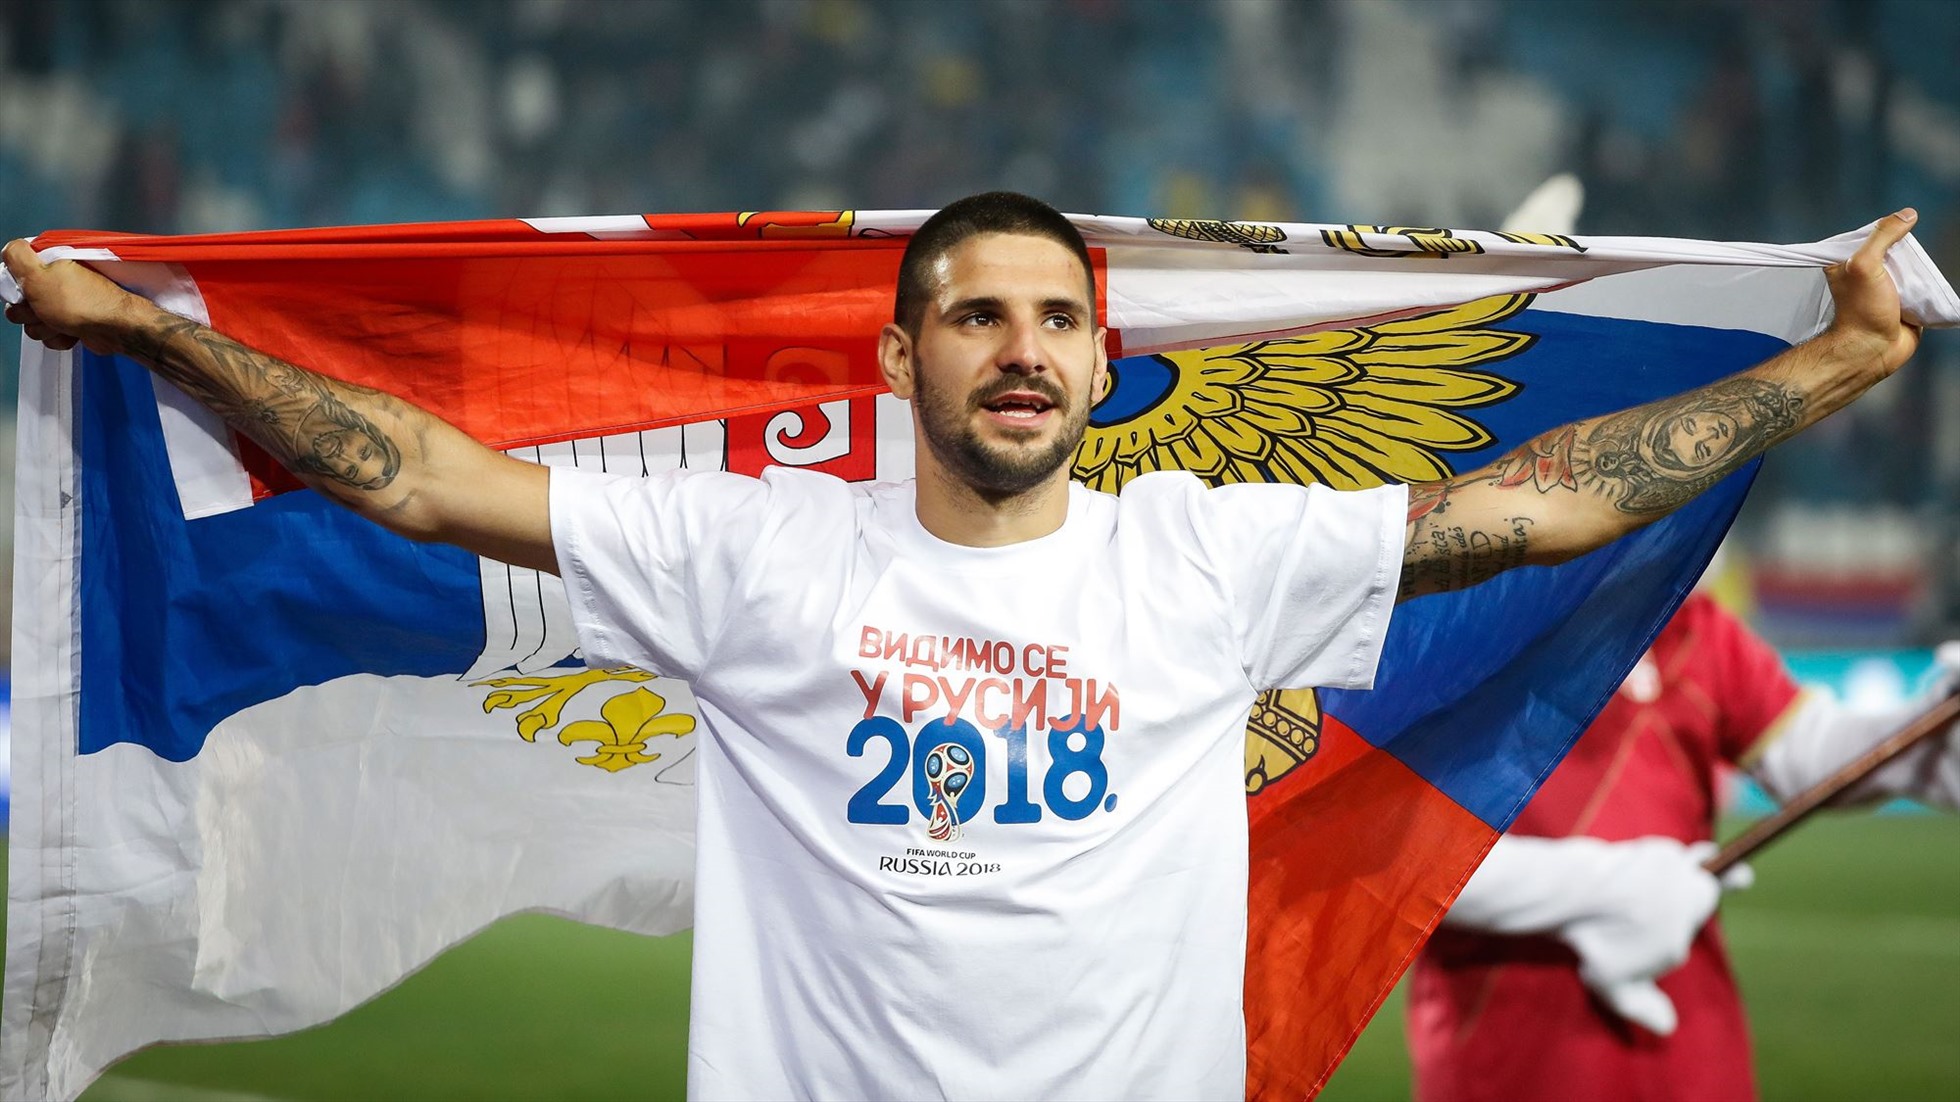 Aleksandar Mitrović là một cầu thủ bóng đá chuyên nghiệp đá vị trí tiền đạo cho Đội tuyển bóng đá quốc gia Serbia, với hiệu suất ghi bàn cao. Ảnh: NUFC